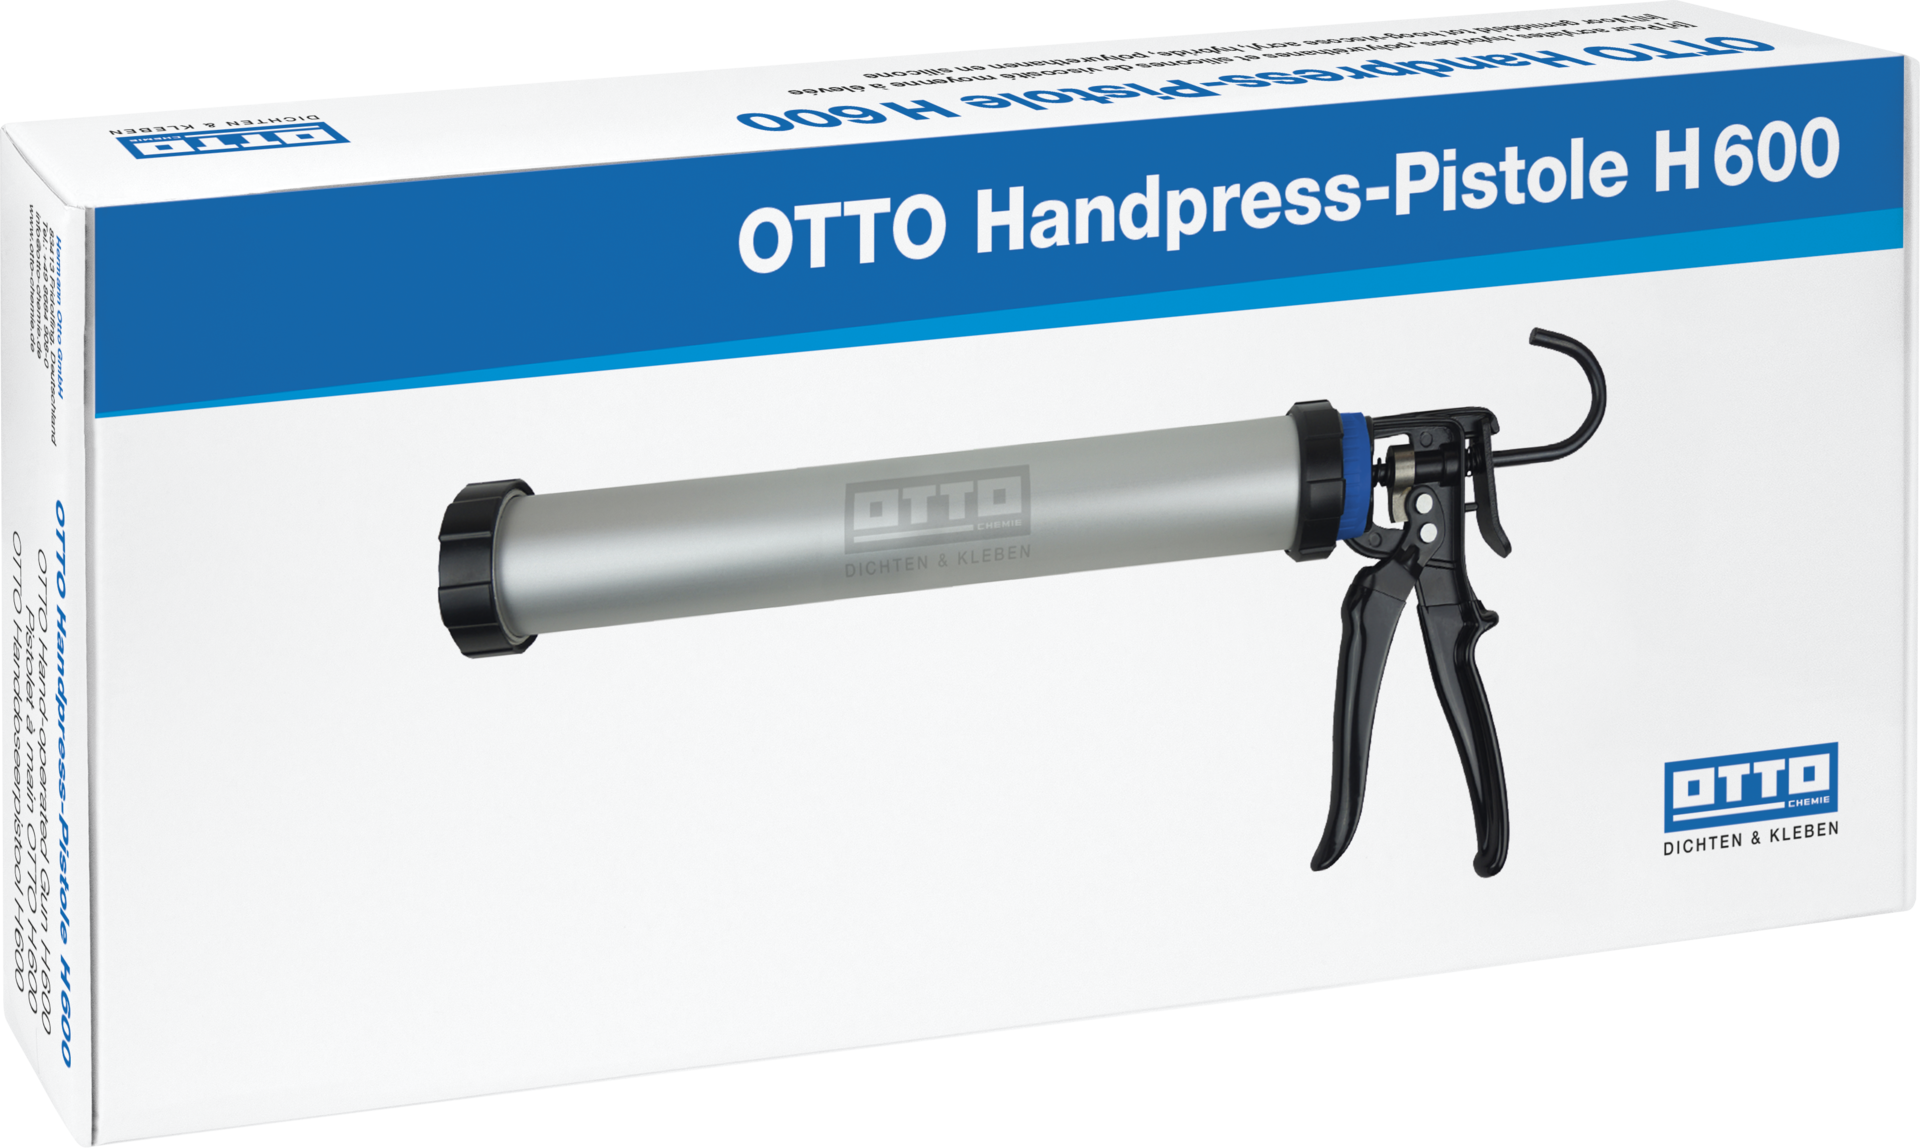 OTTO Handpress-Pistole H 600